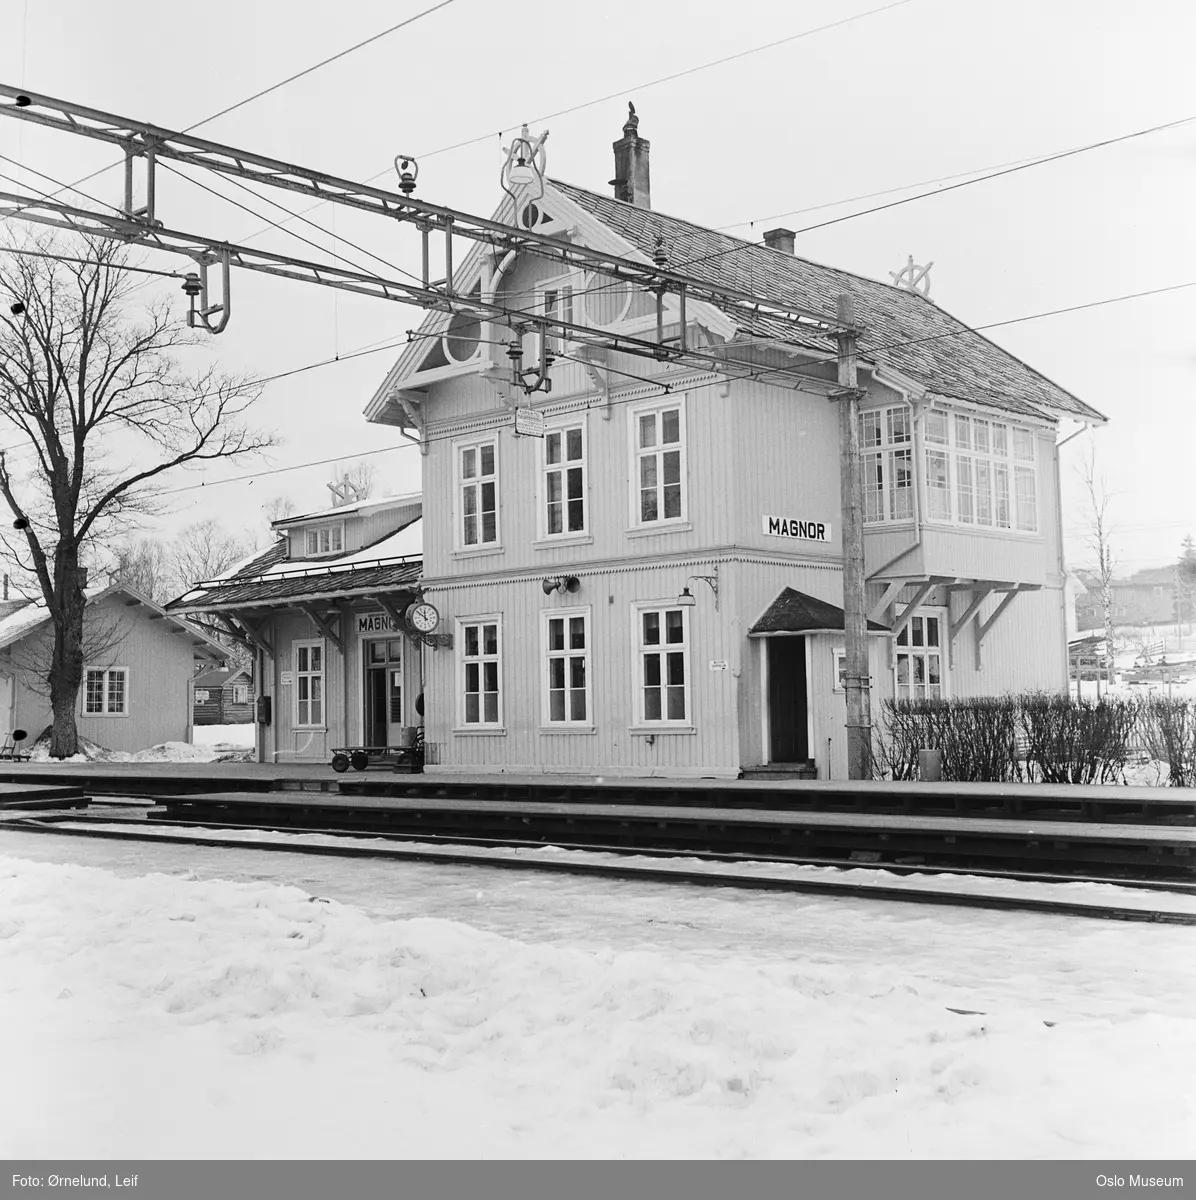 Magnor jernbanestasjon, plattform, sporområde, stasjonsbygning, snø